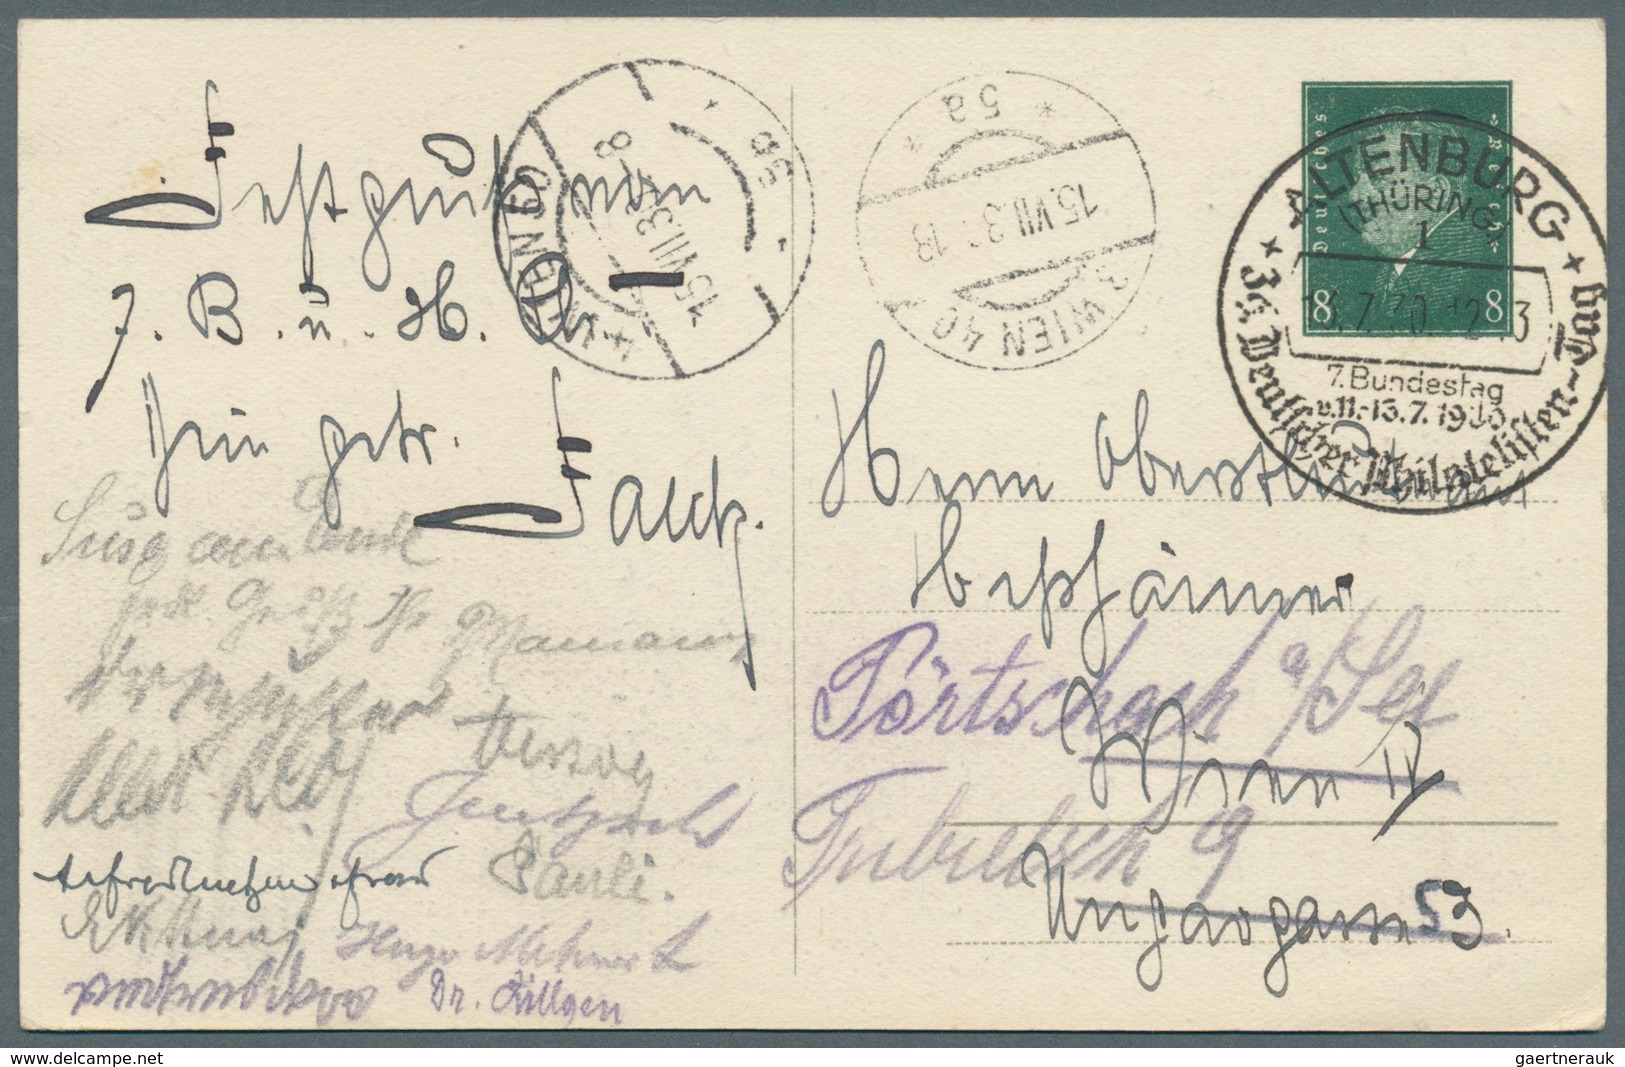 Thematik: Philatelie - Tag der Briefmarke / stamp days: Ab 1897, Deutschland, Tag der Briefmarke, Ph